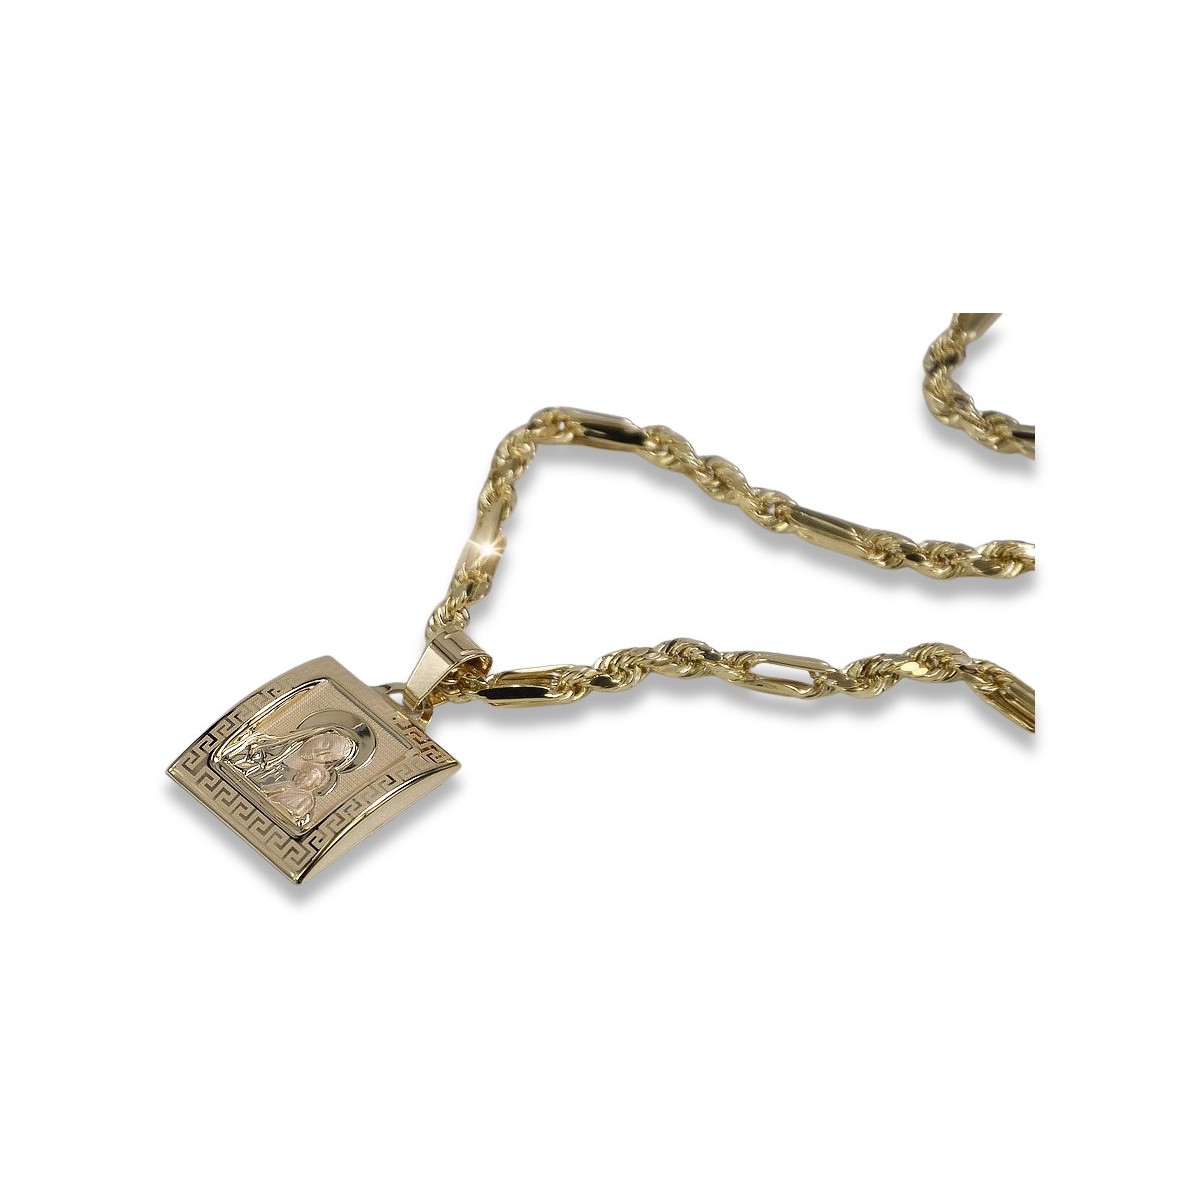 Złoty medalik Bozia 14k 585 z łańcuszkiem Corda Figaro pm001yM&cc004y50